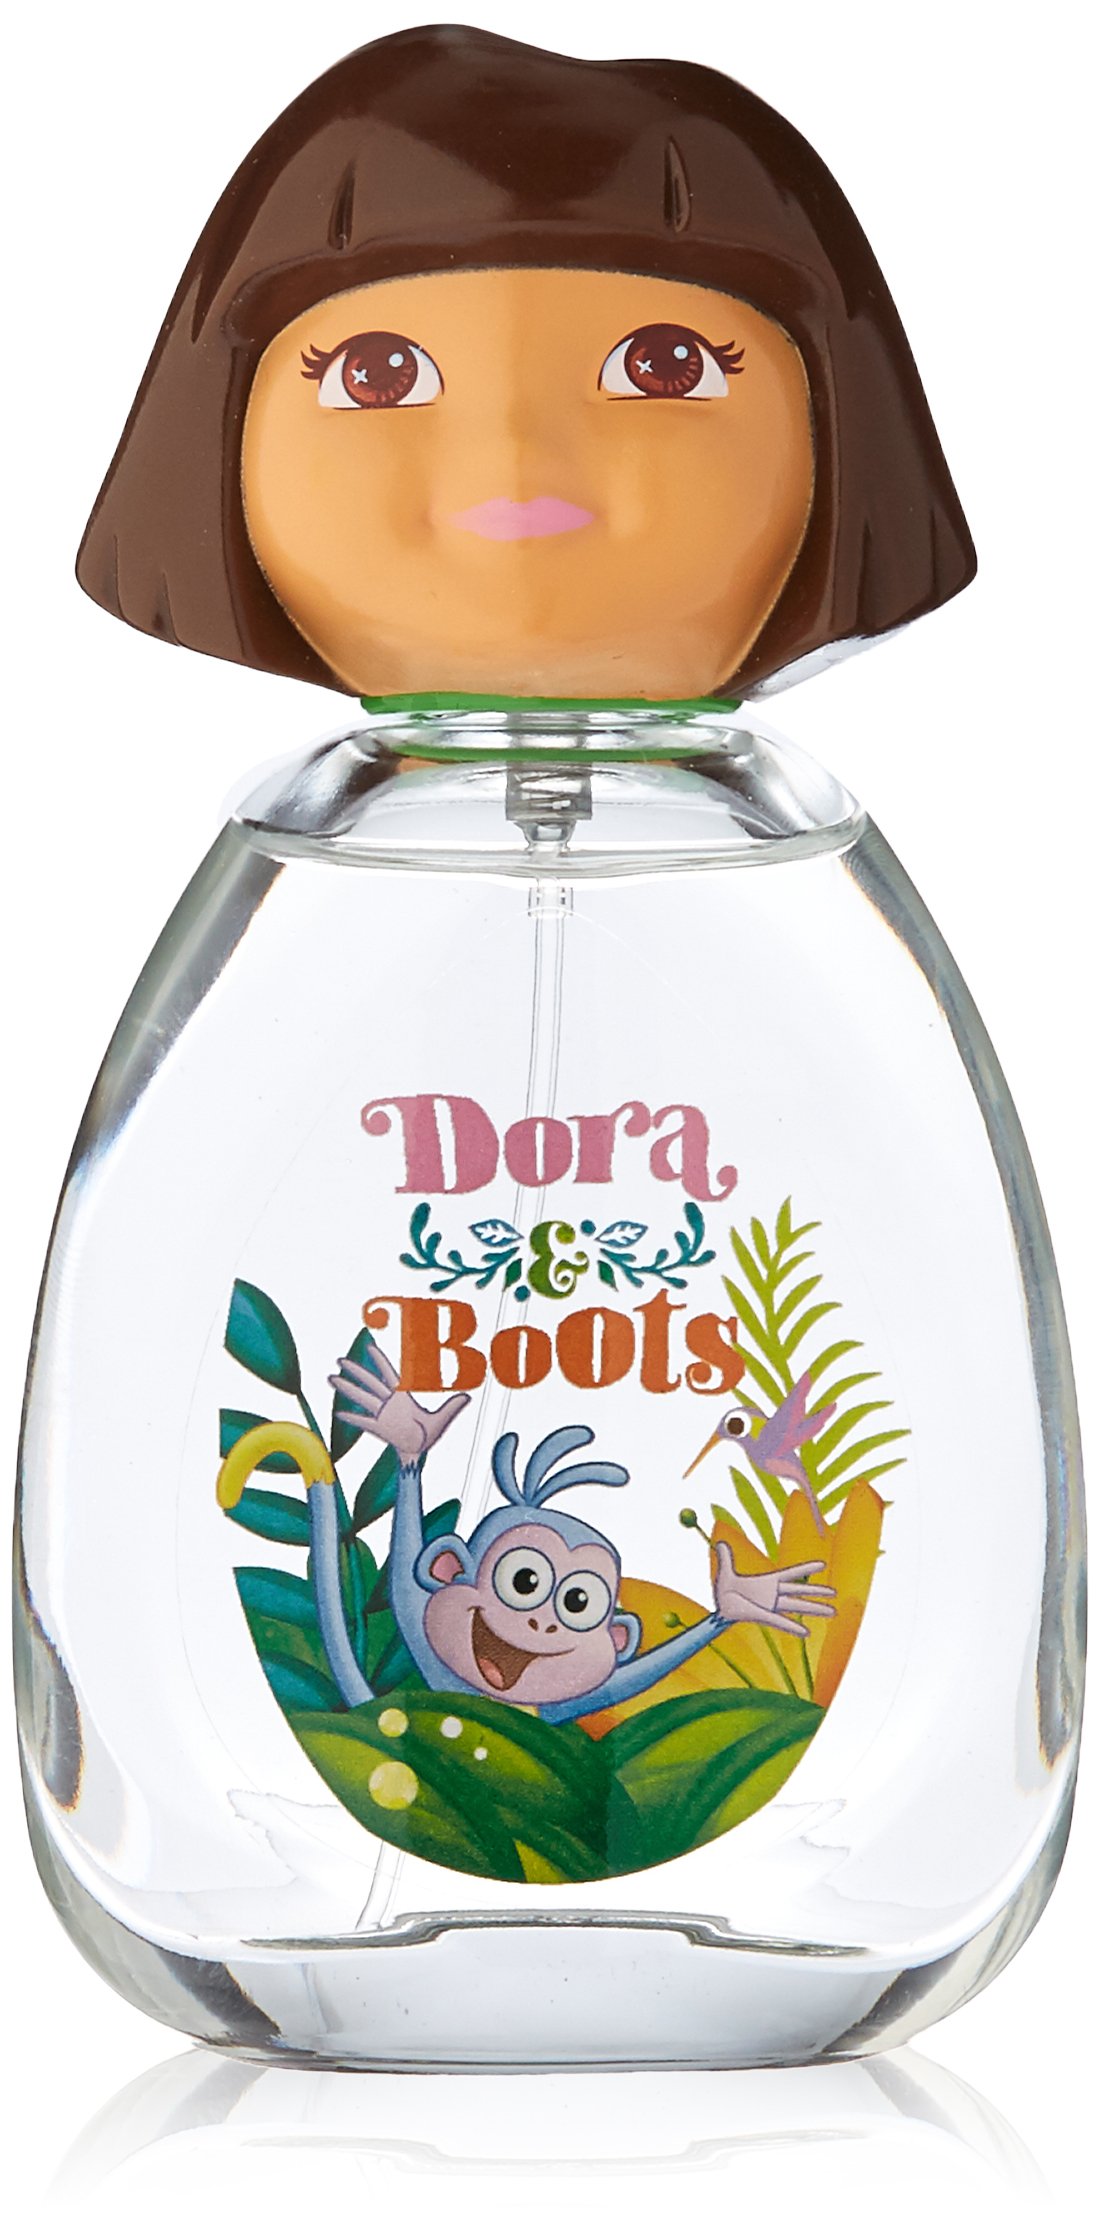 Marmol & Son Dora Eau de Toilette for Kids, Boots, 3.4 Ounce